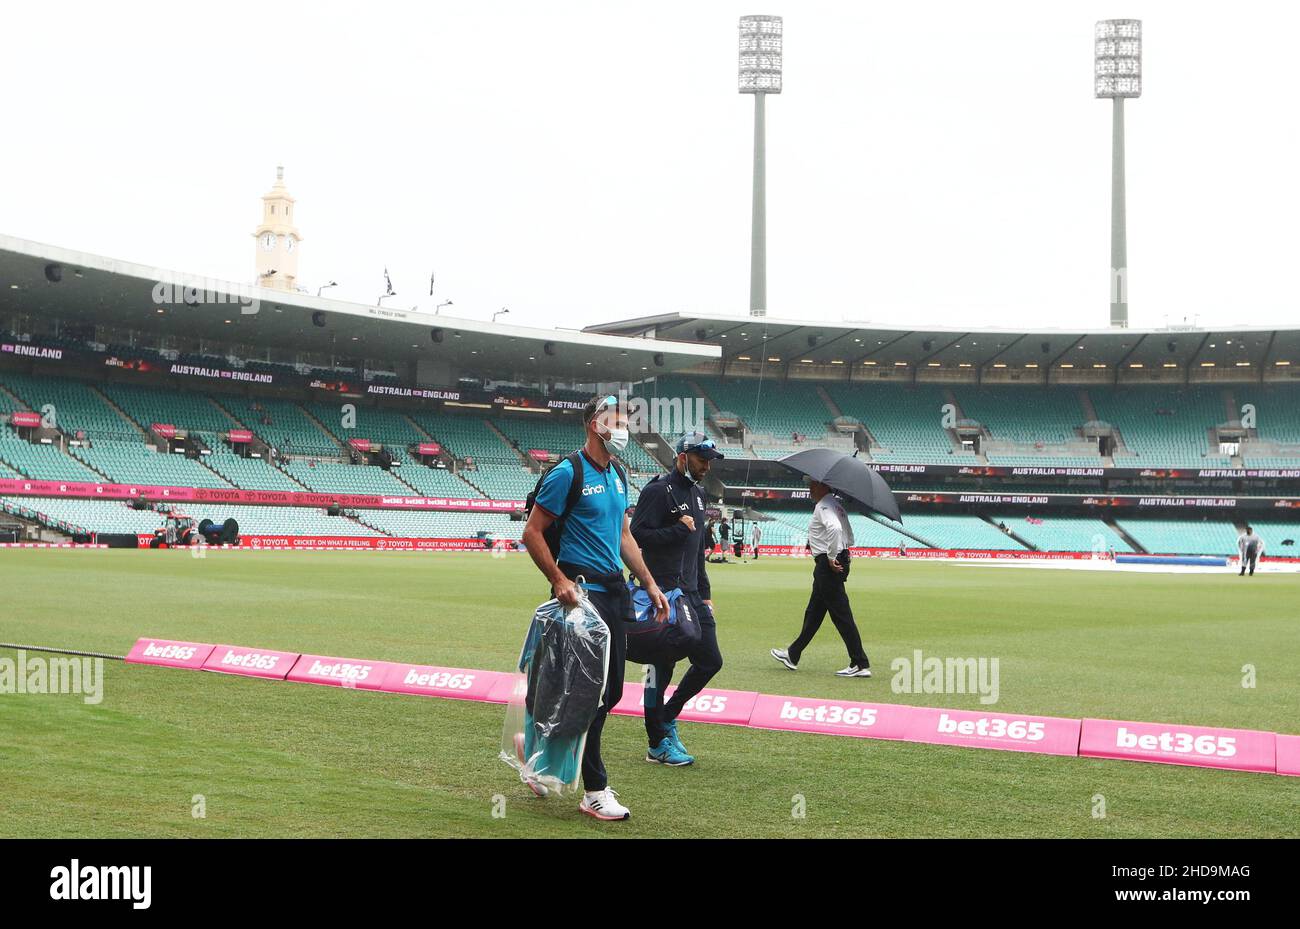 James Anderson in Inghilterra arriva durante il primo giorno del quarto test Ashes al Sydney Cricket Ground, Sydney. Data foto: Mercoledì 5 gennaio 2022. Foto Stock